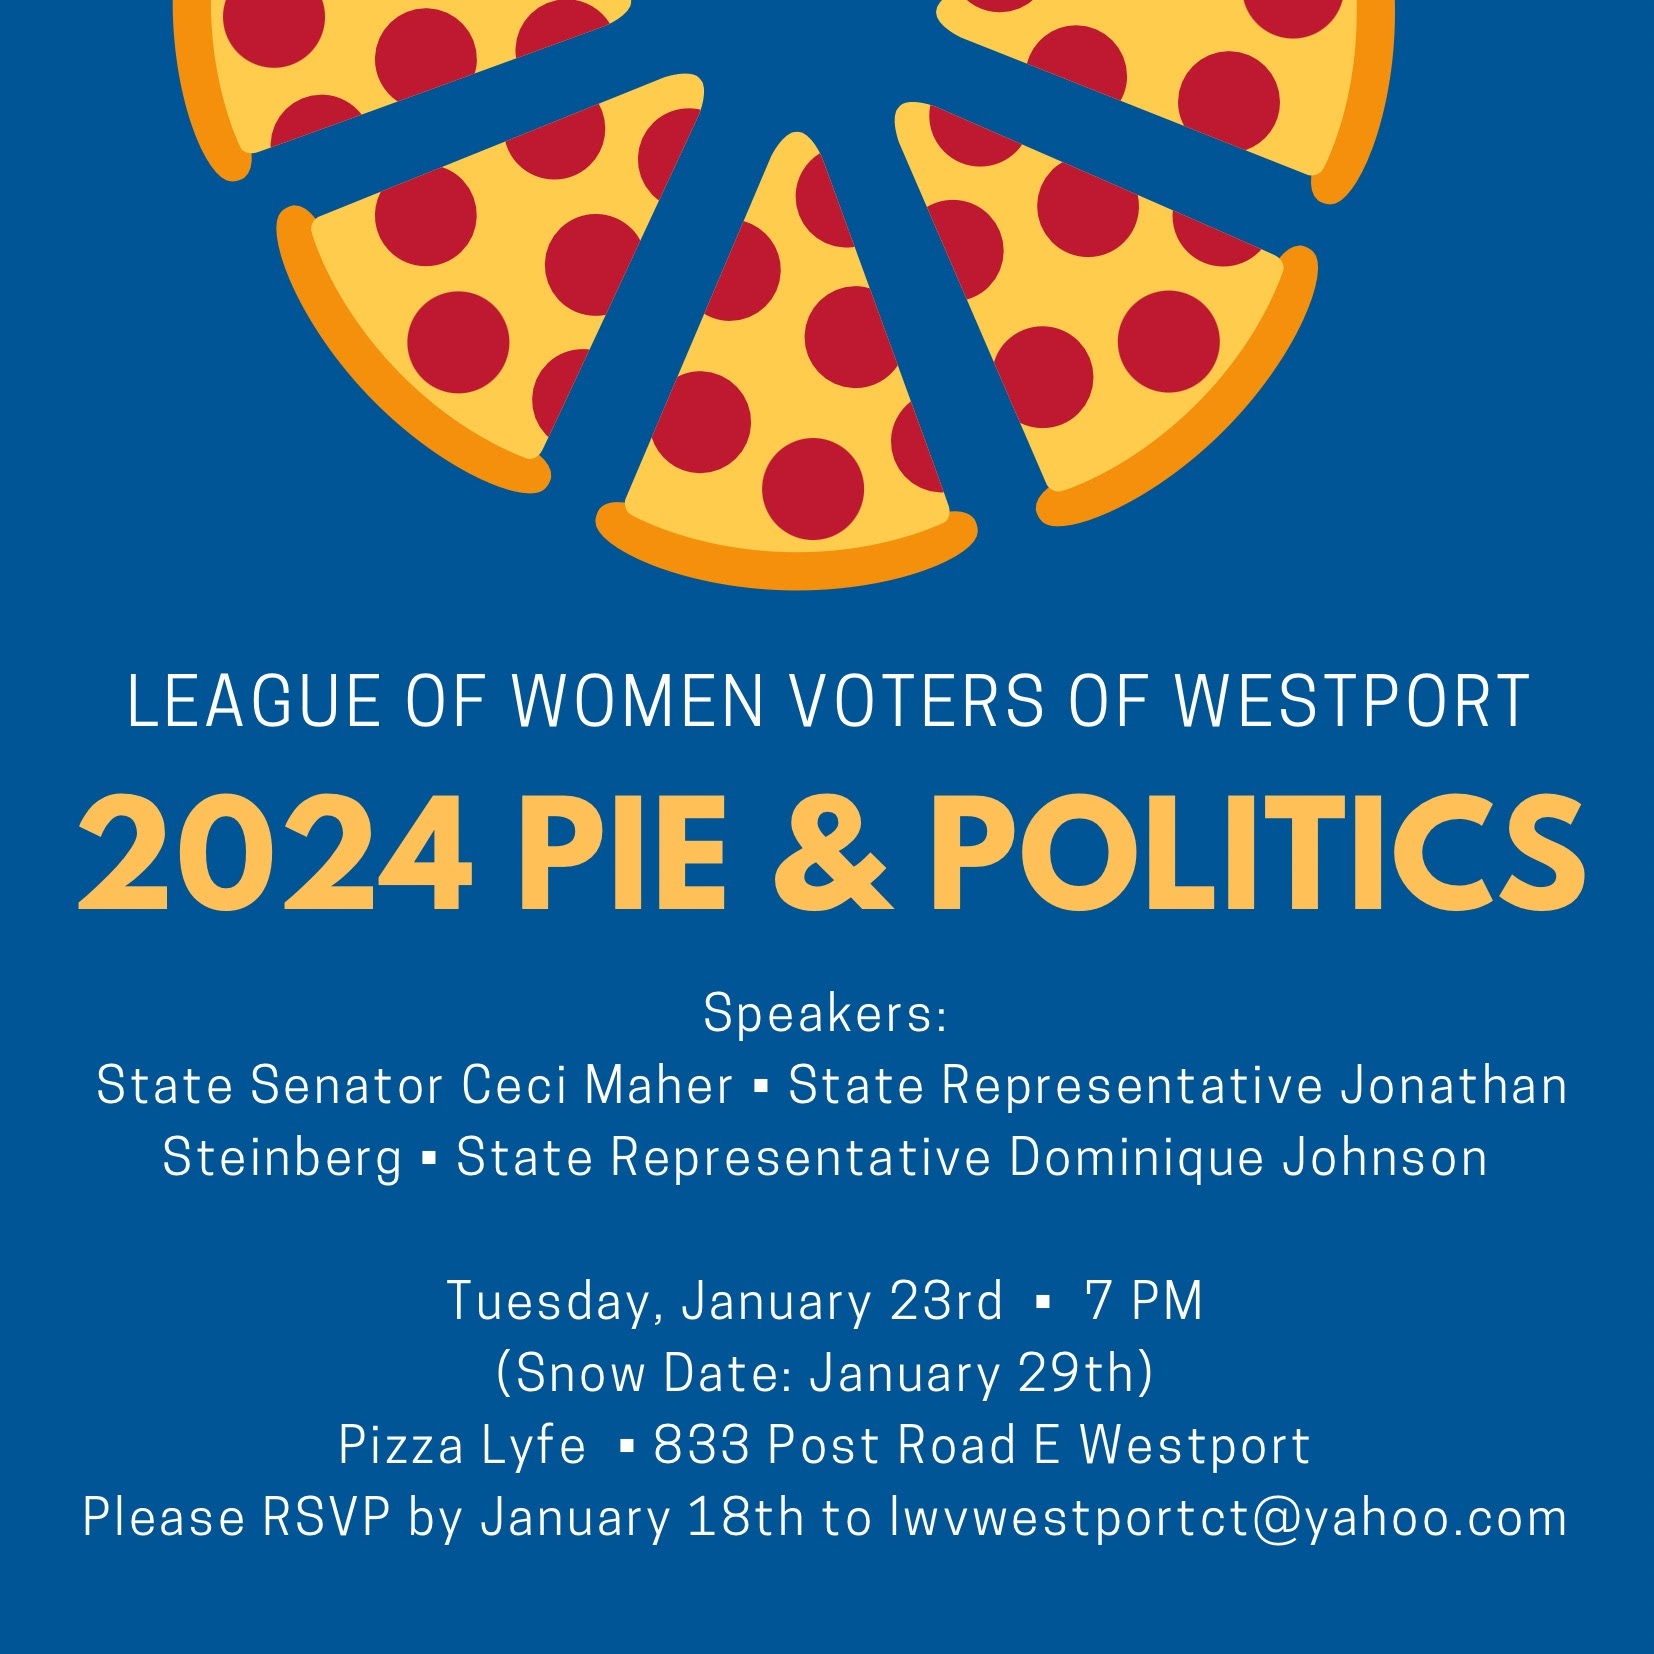 Westport Pie and Politics Event Information Flyer